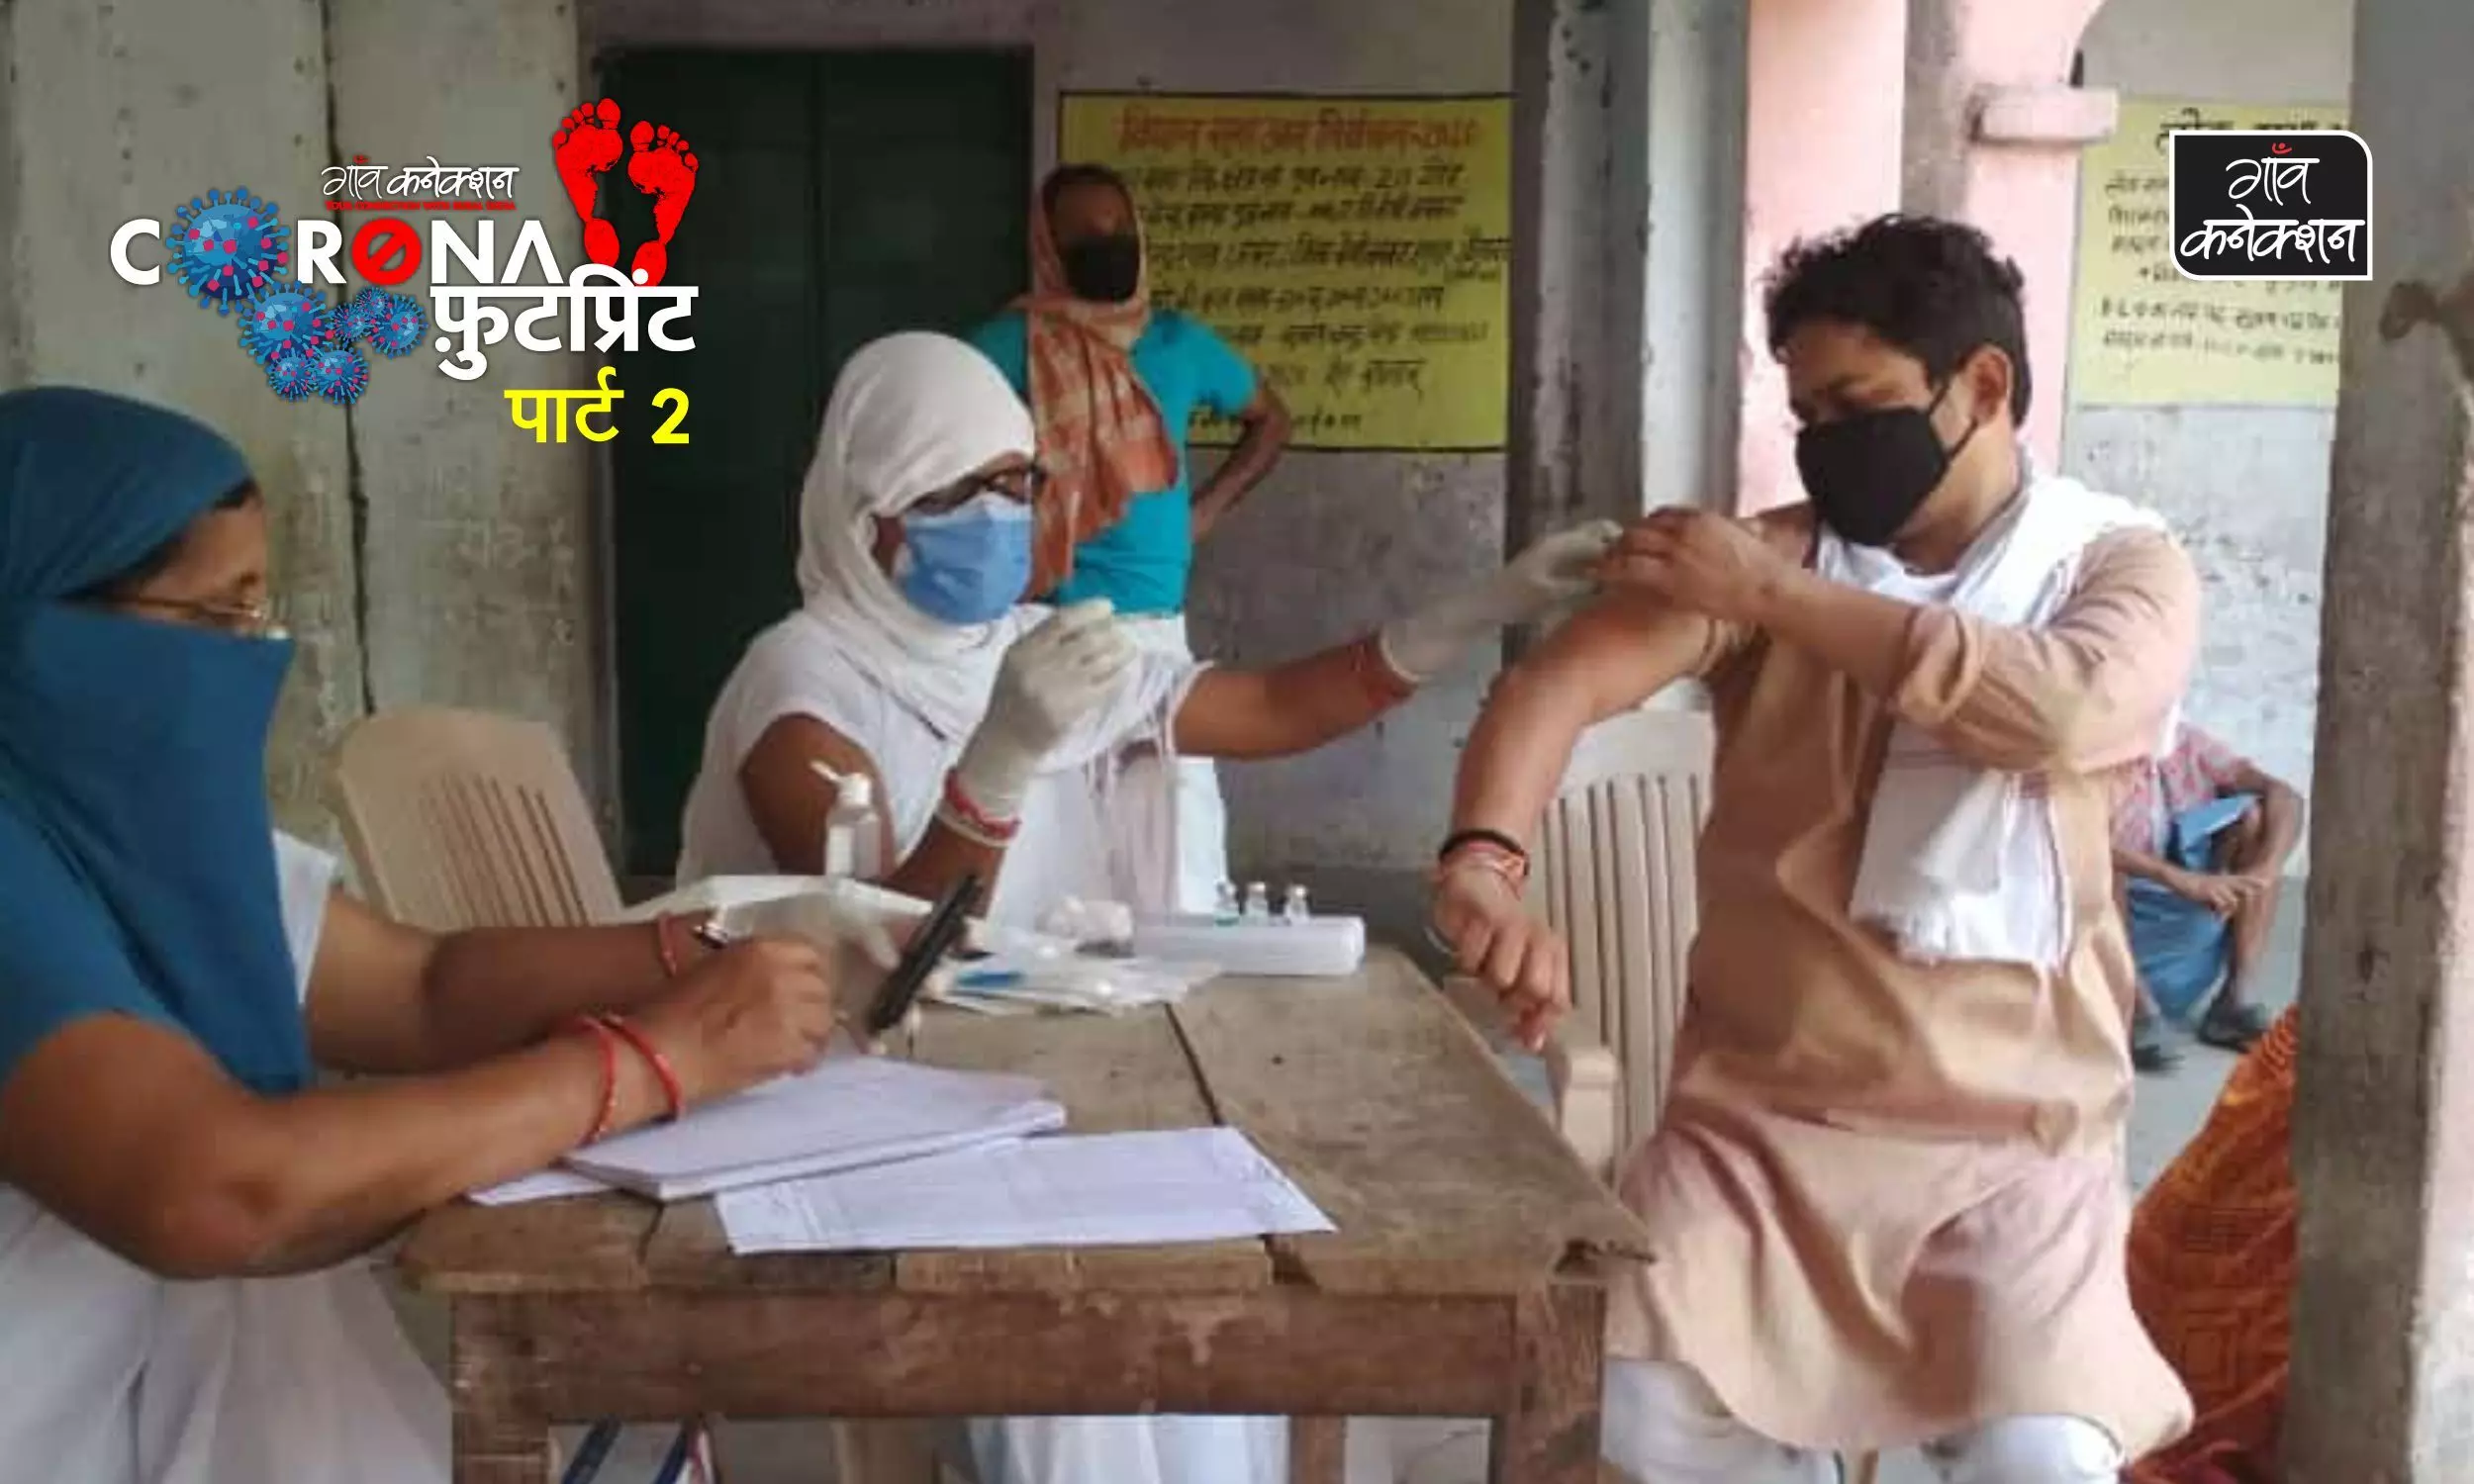 बिहार के इस गांव में लोग खुद आगे आकर लगवा रहे वैक्सीन और करवा रहे कोरोना टेस्ट